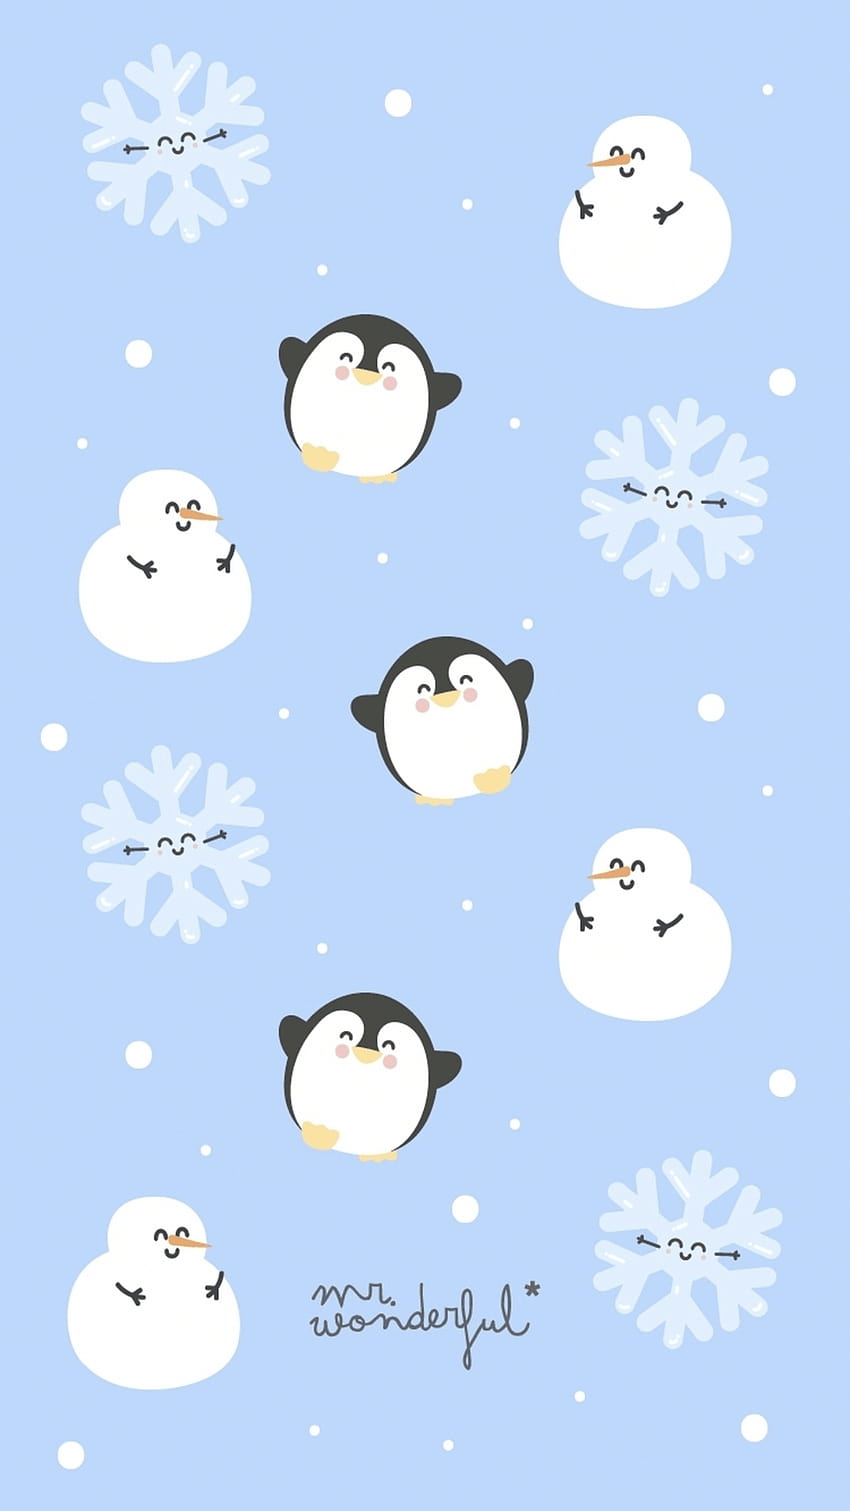 mrwonderful, cute kawaii snowmen HD phone wallpaper